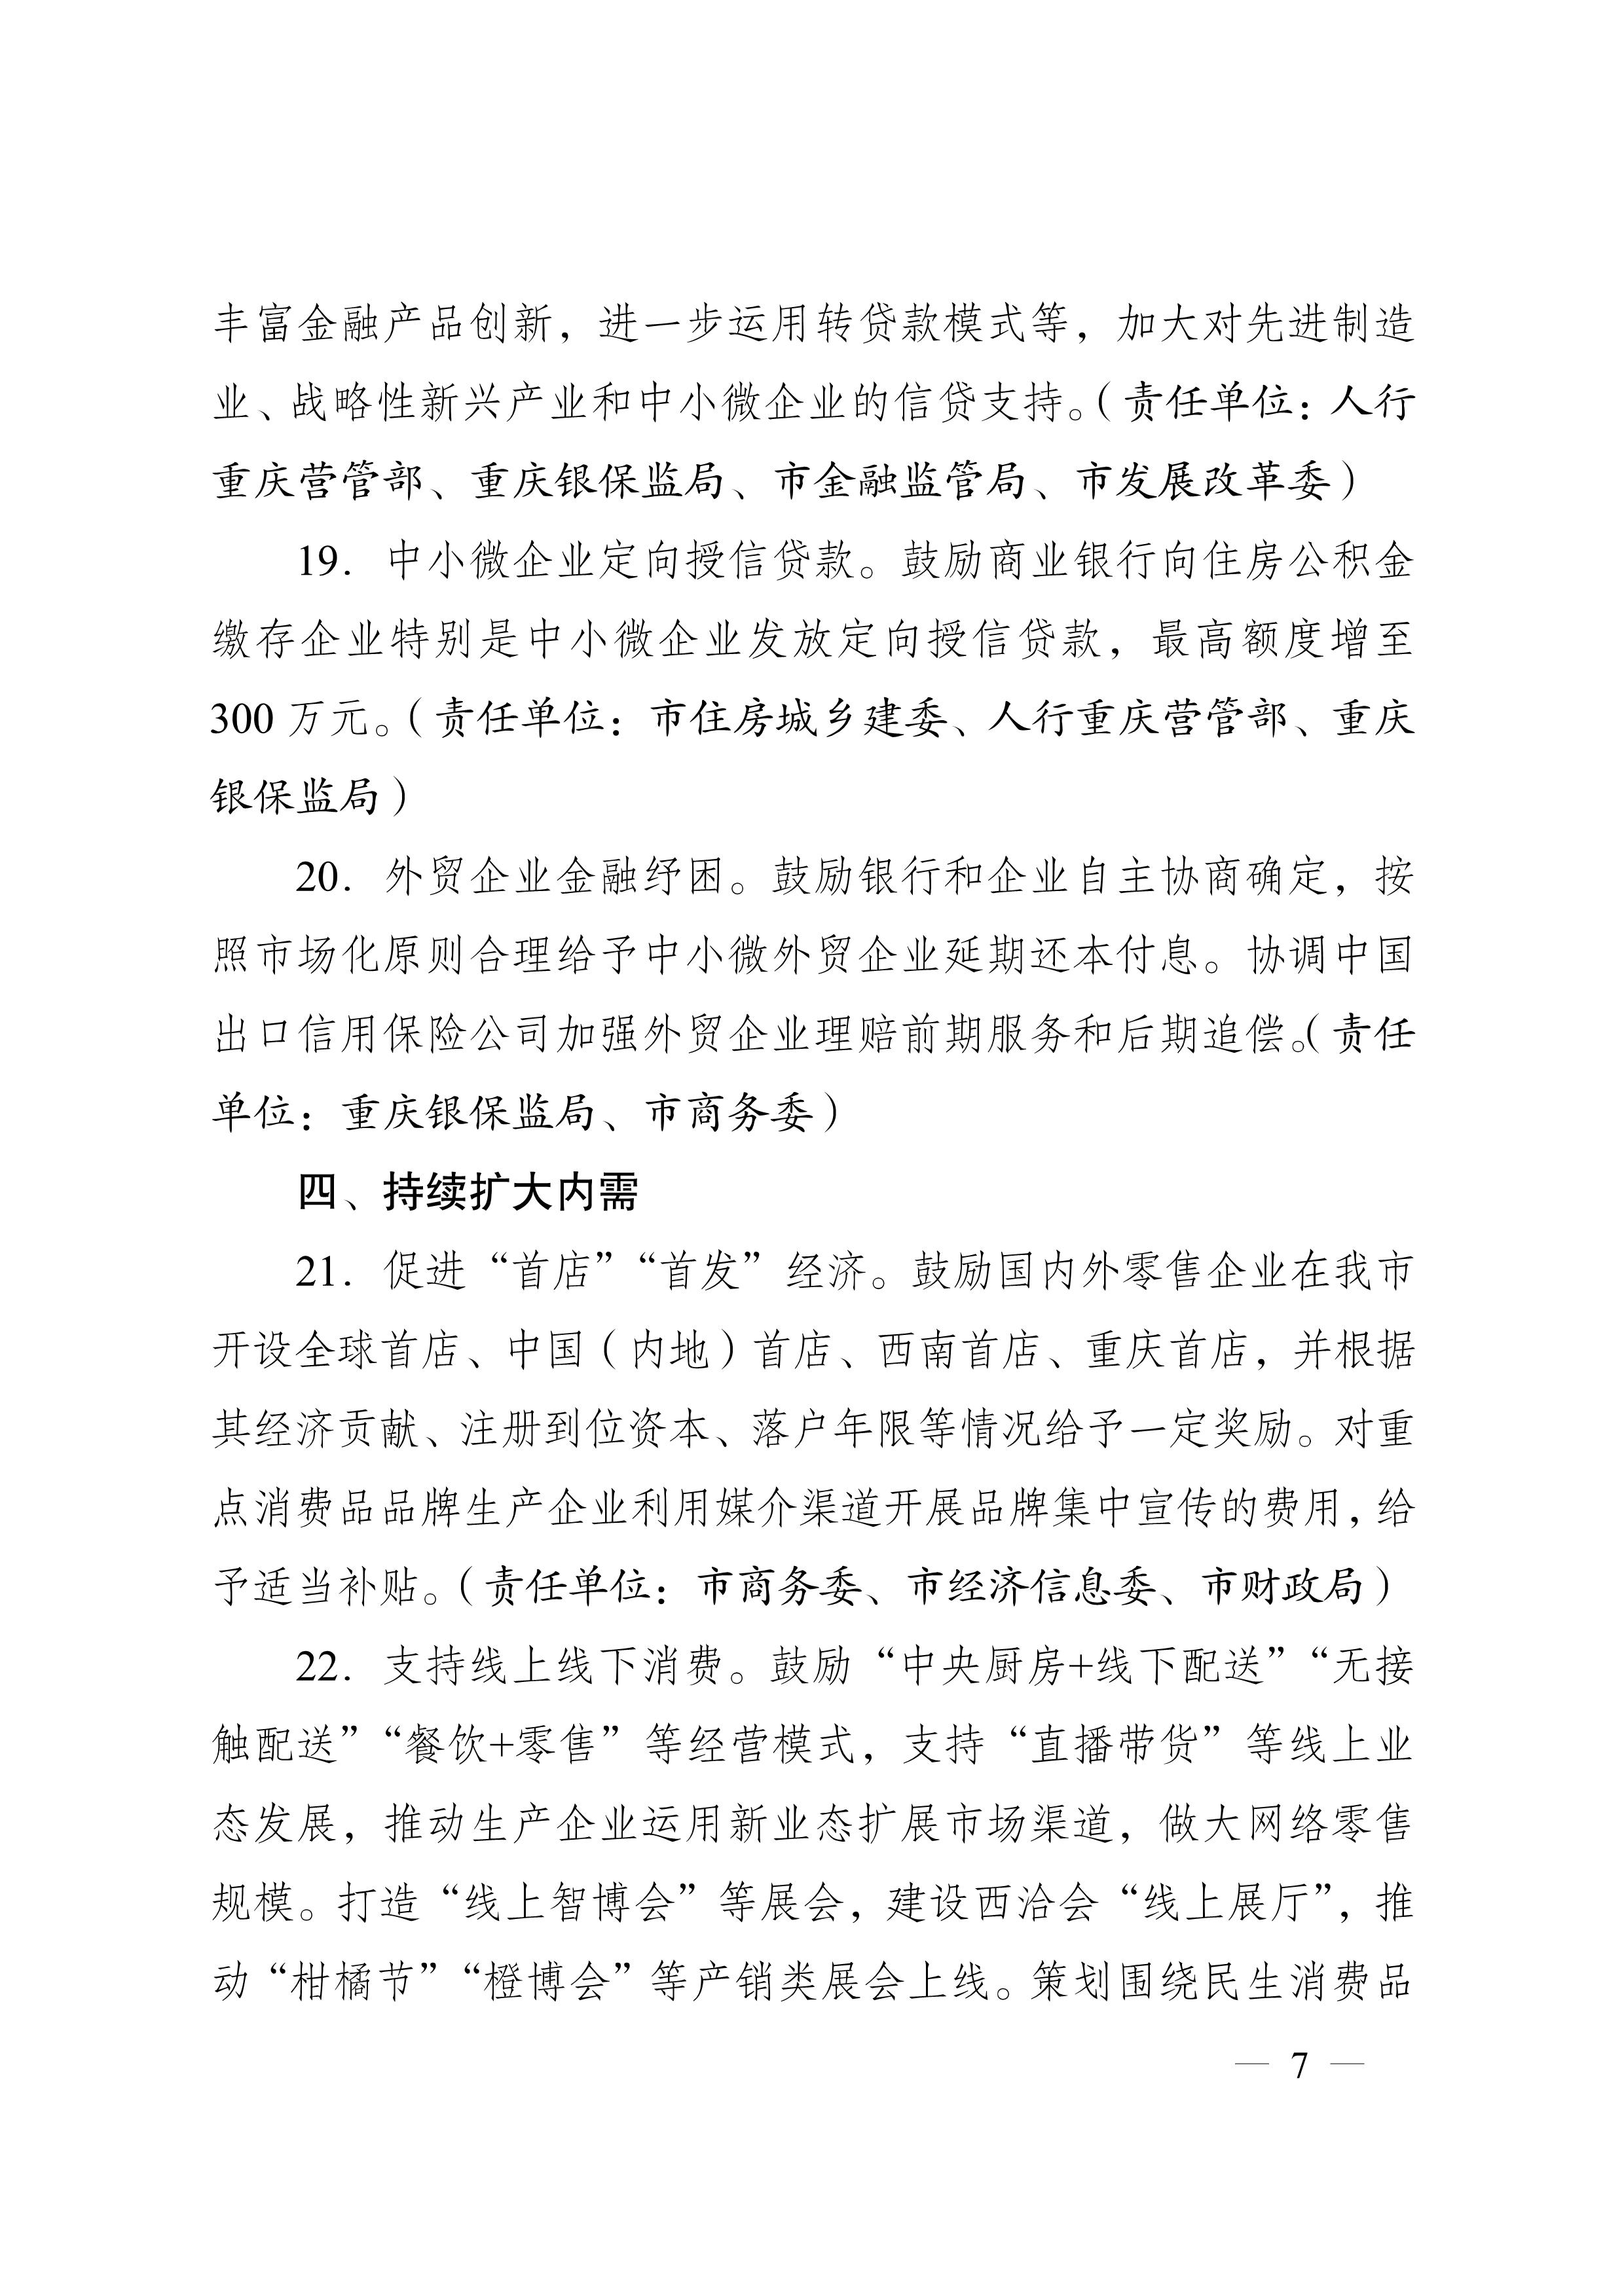 重庆市人民政府办公厅关于促进生产经营稳定发展若干措施的通知(图7)